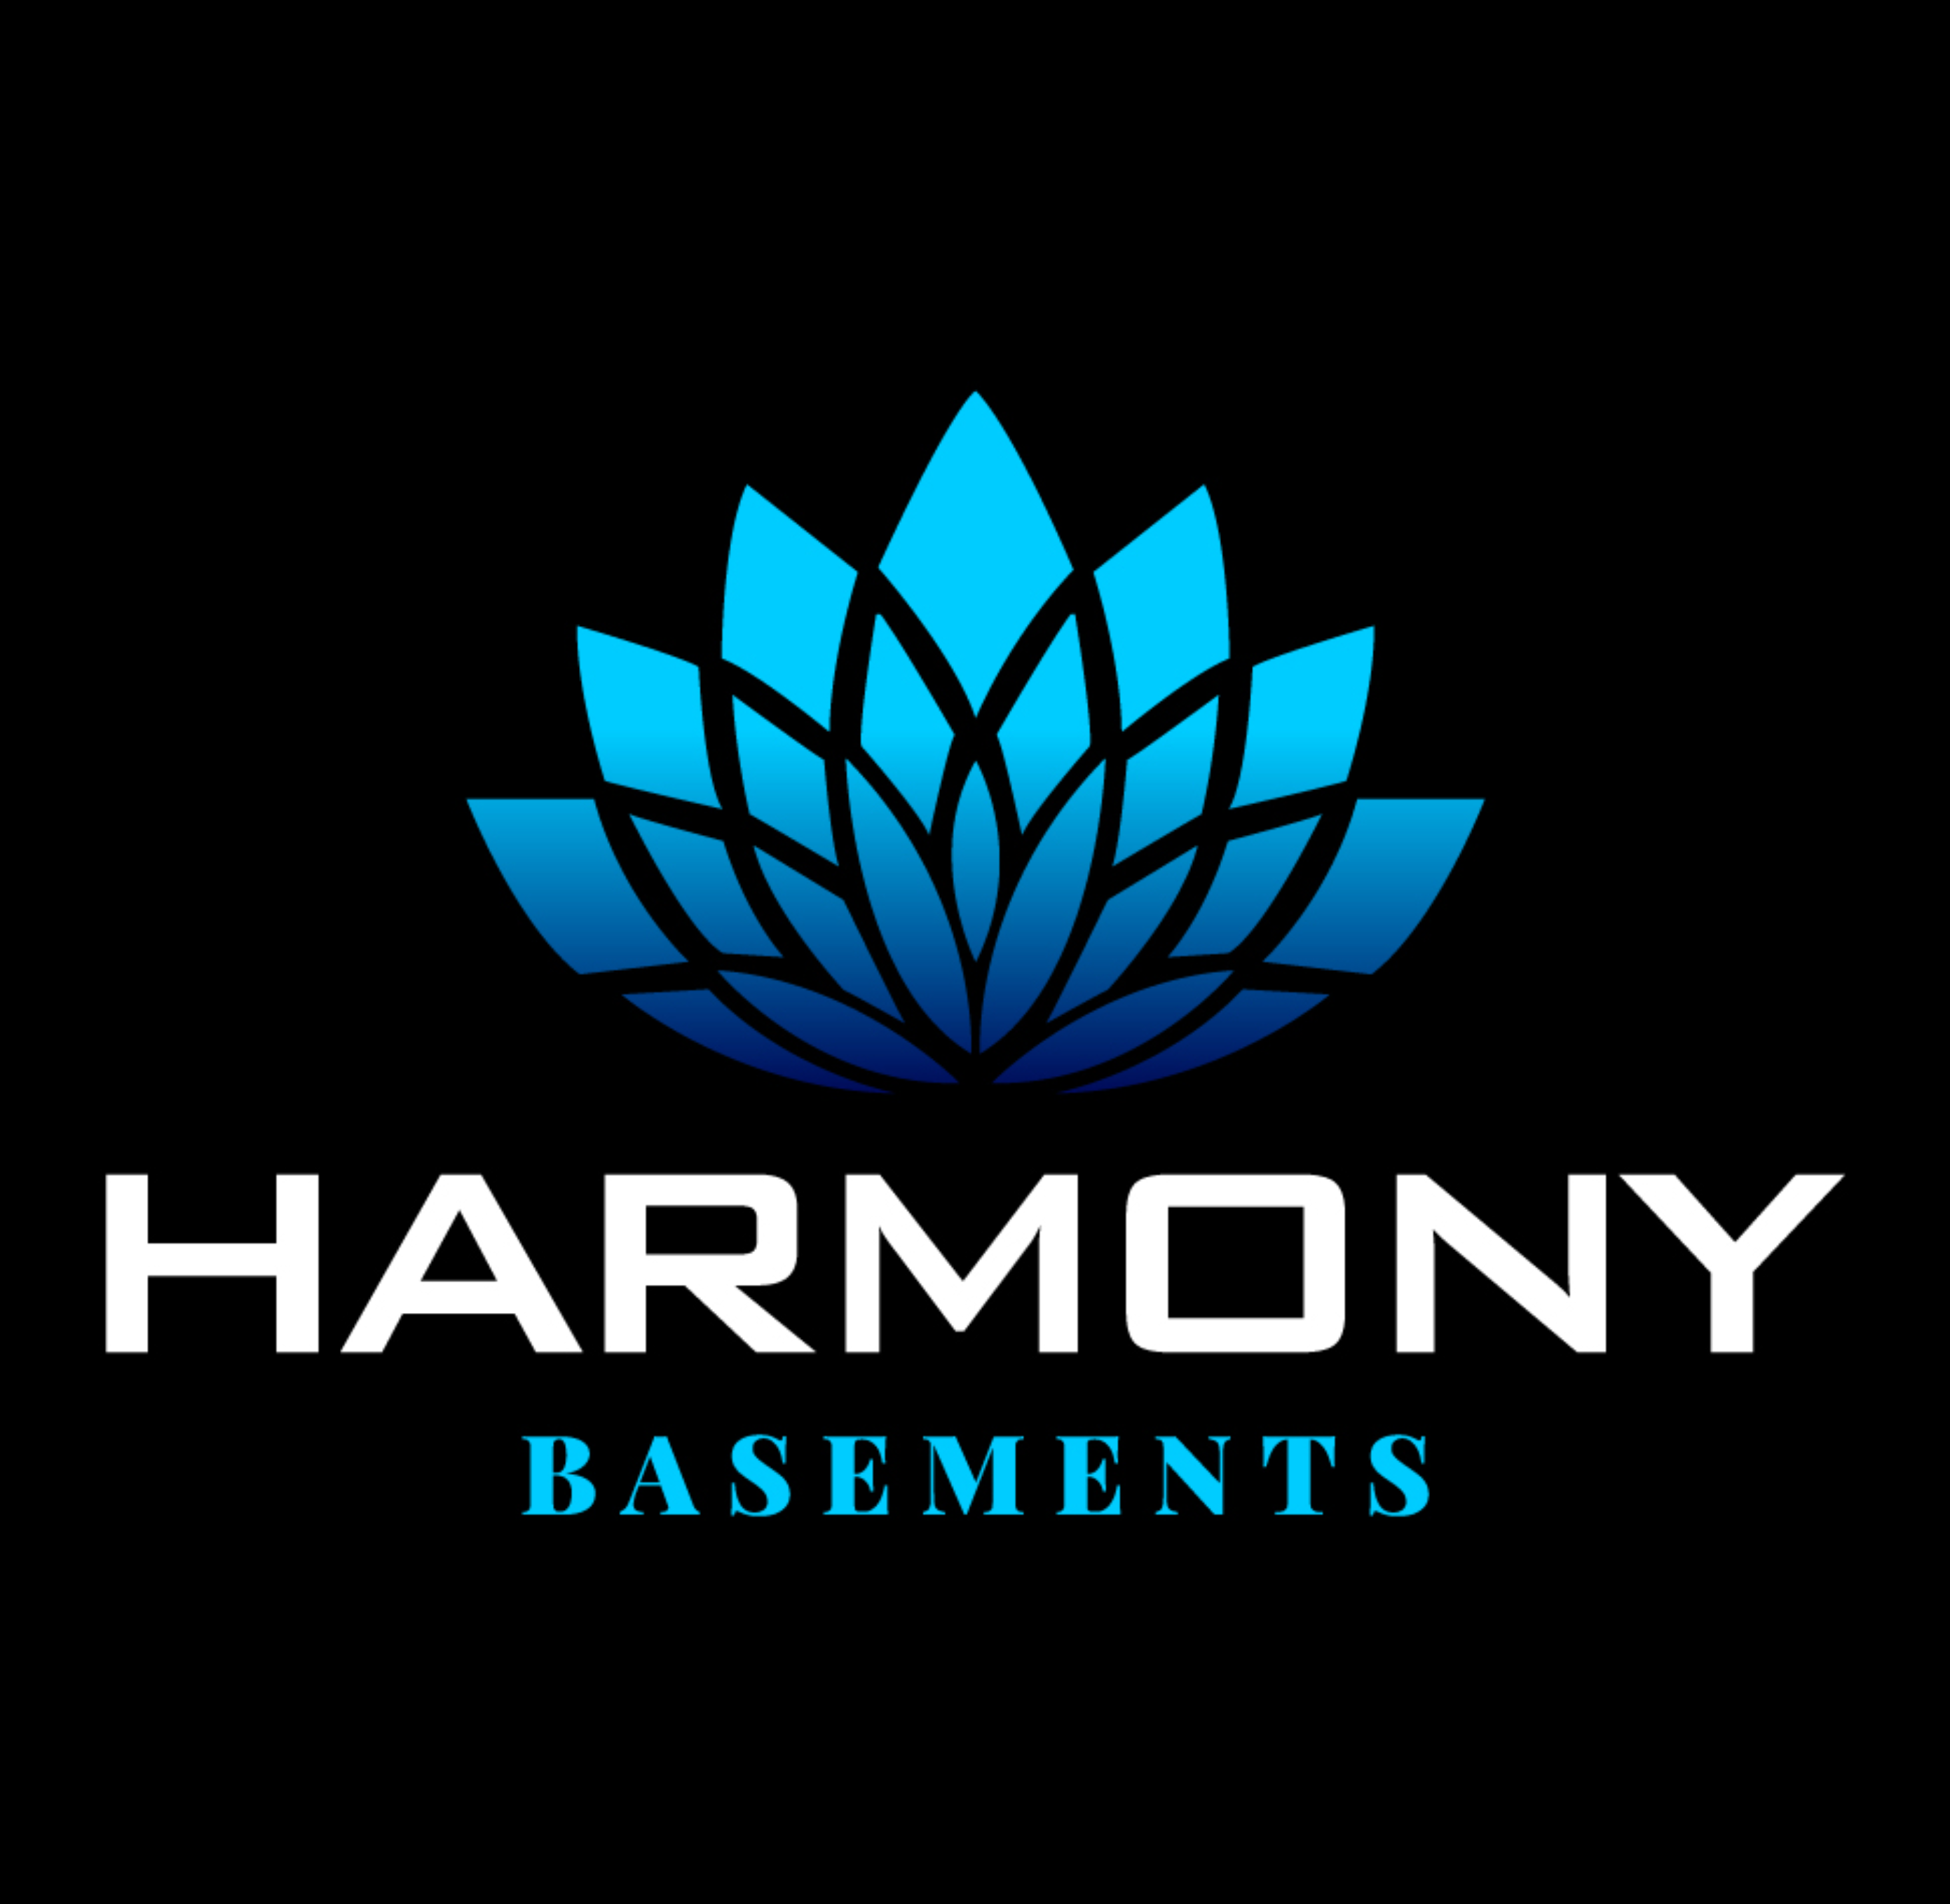 Harmony Basements's logo